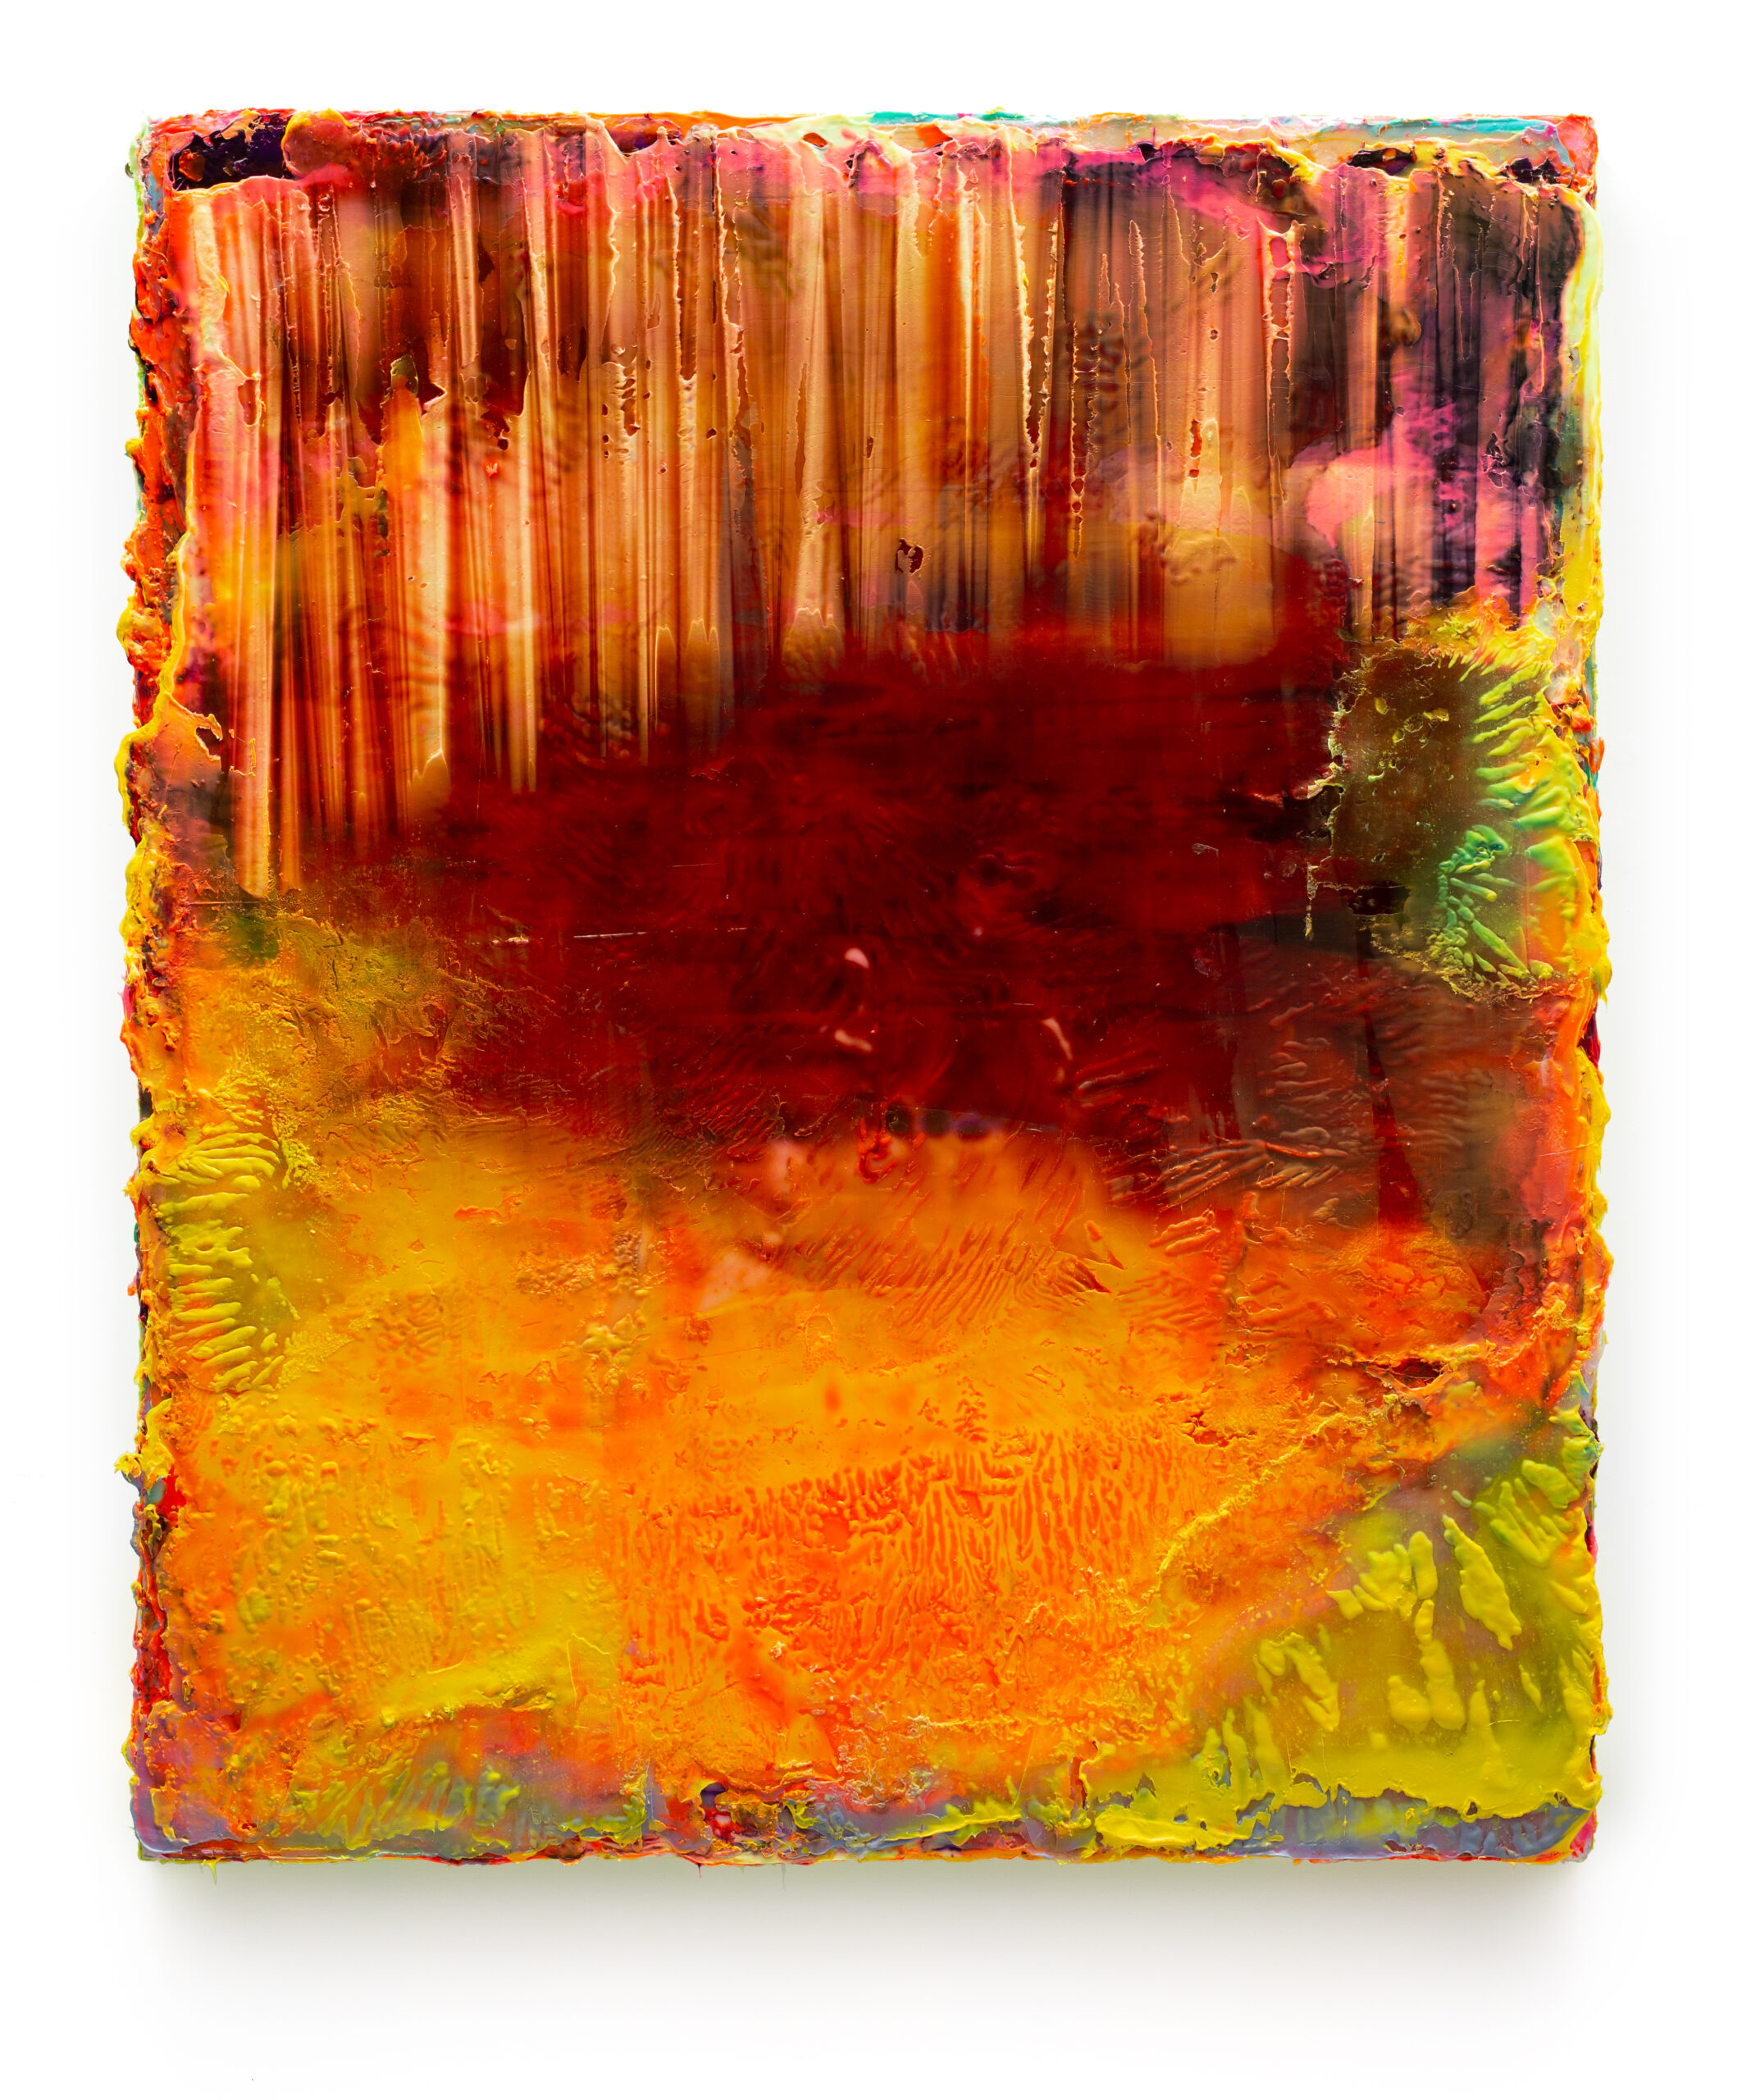 Hebun, 2020, Silicone and pigments on Dibond, ca. 124 x 104 cm